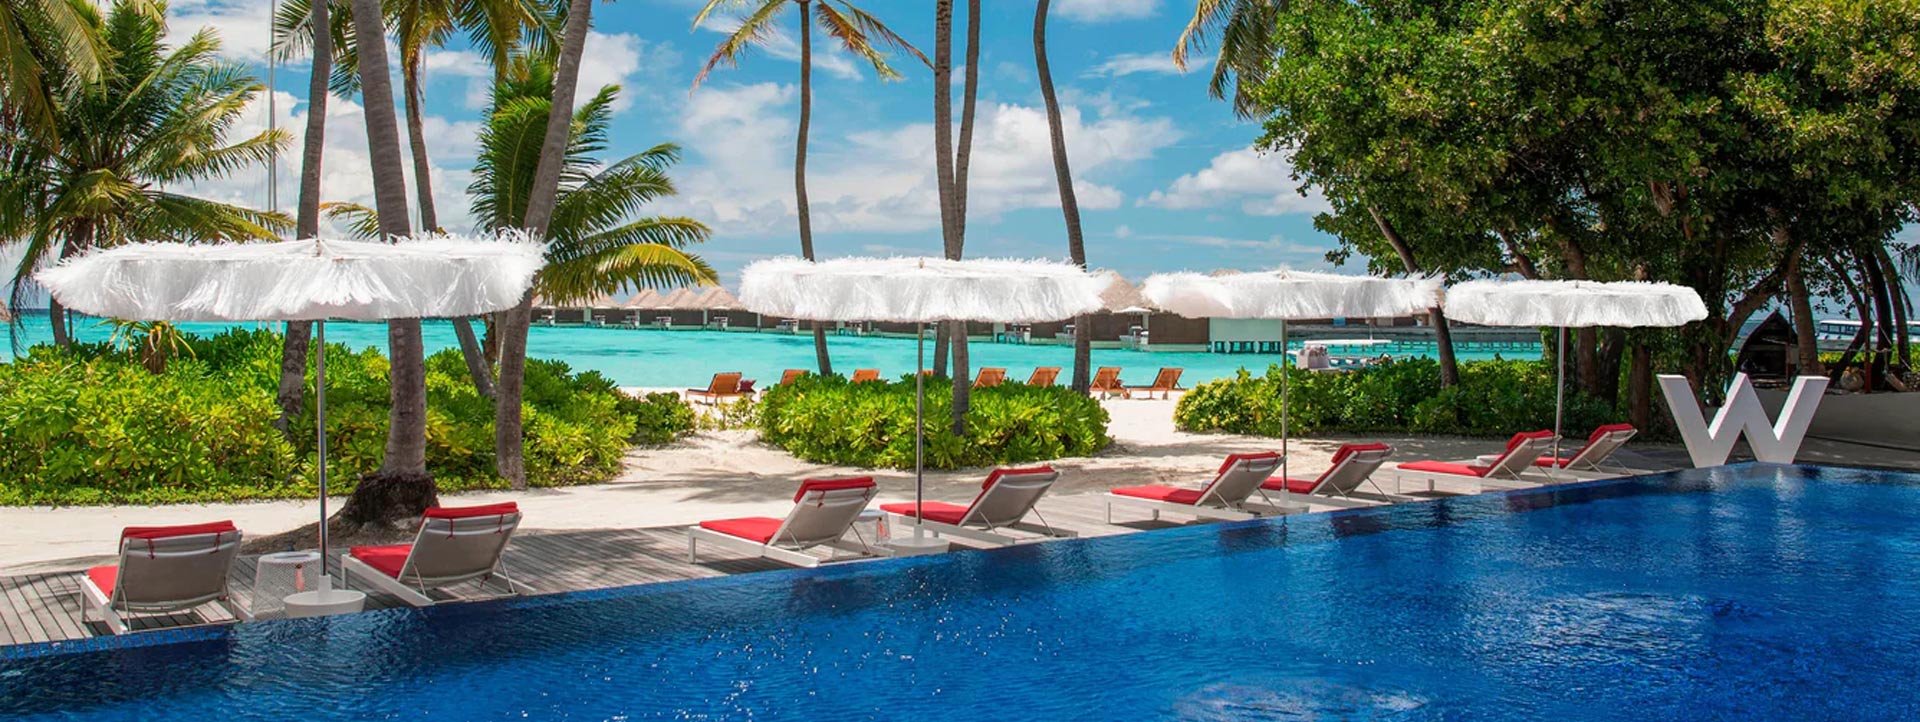 W-MALDIVES-HOTEL-pool